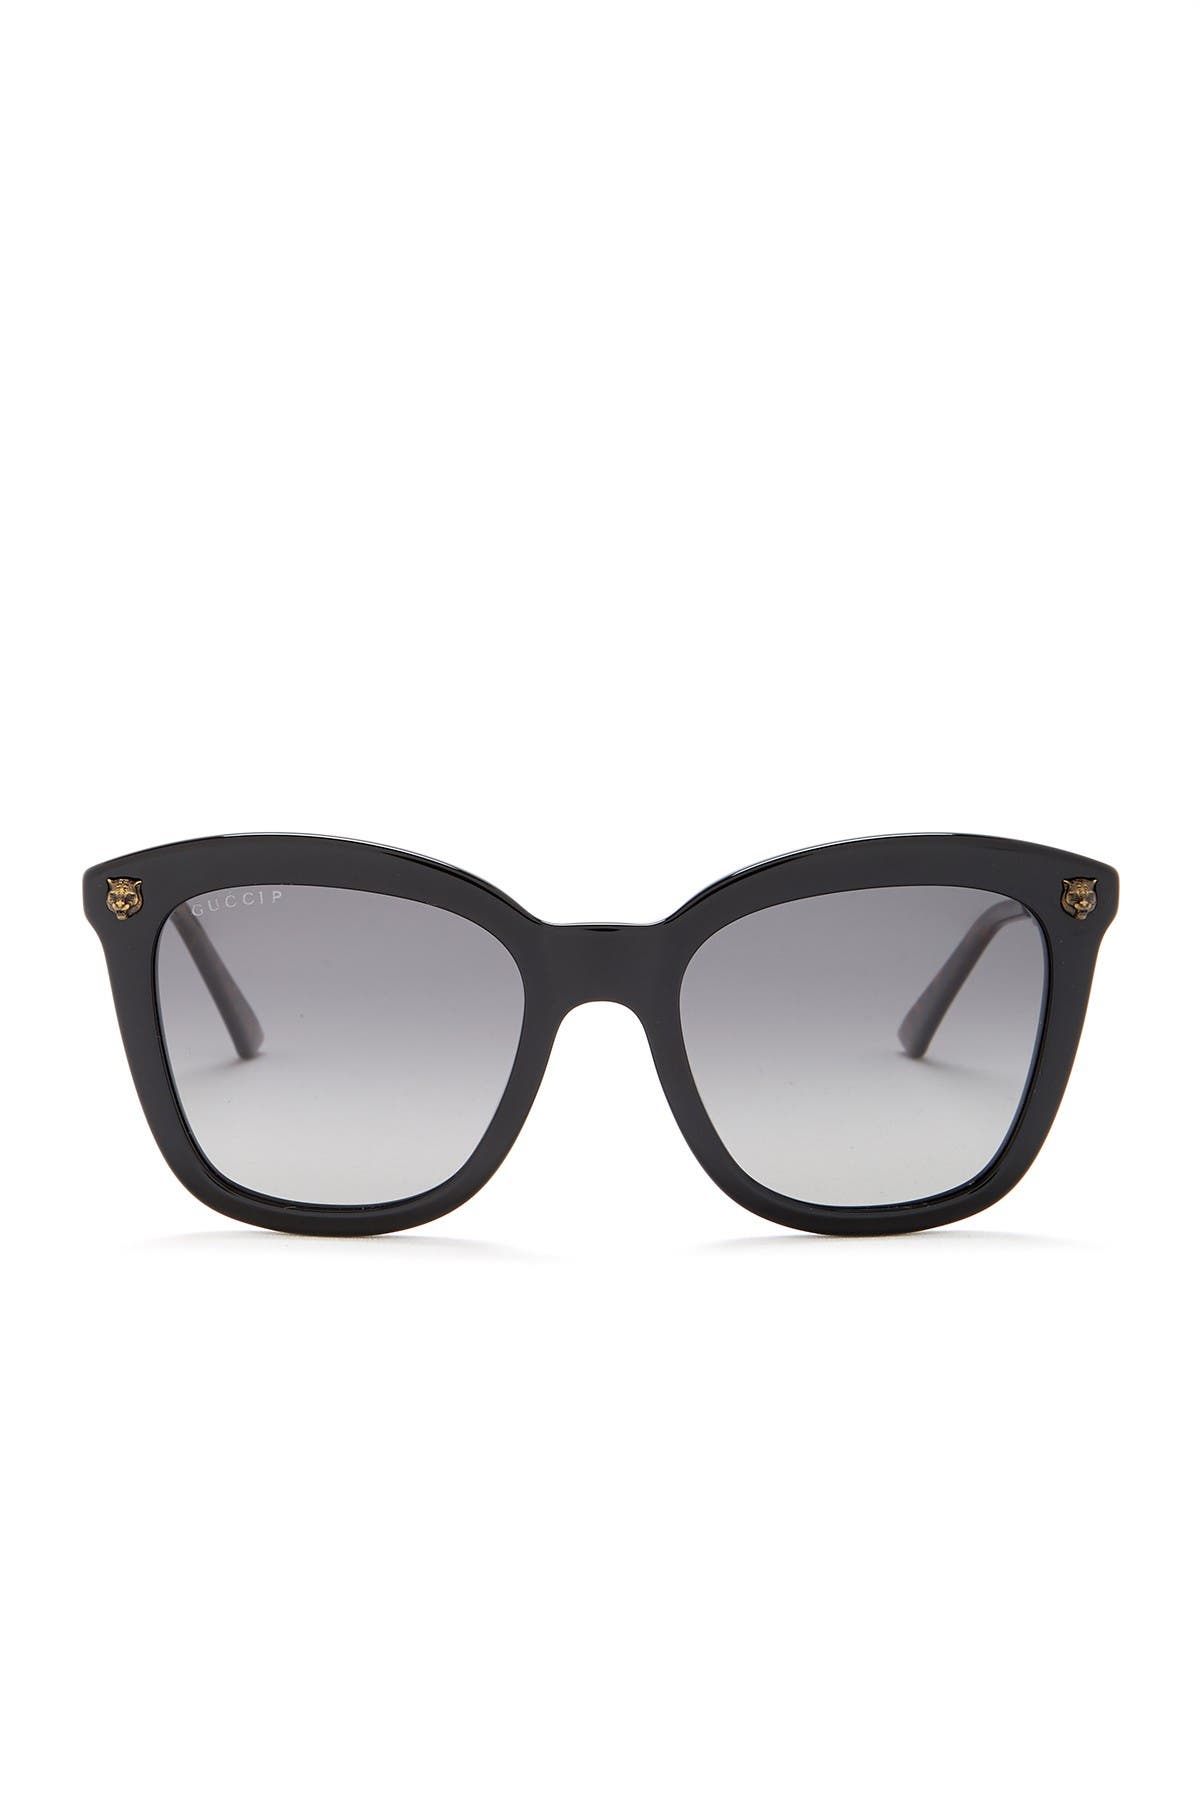 GUCCI | 52mm Square Sunglasses 